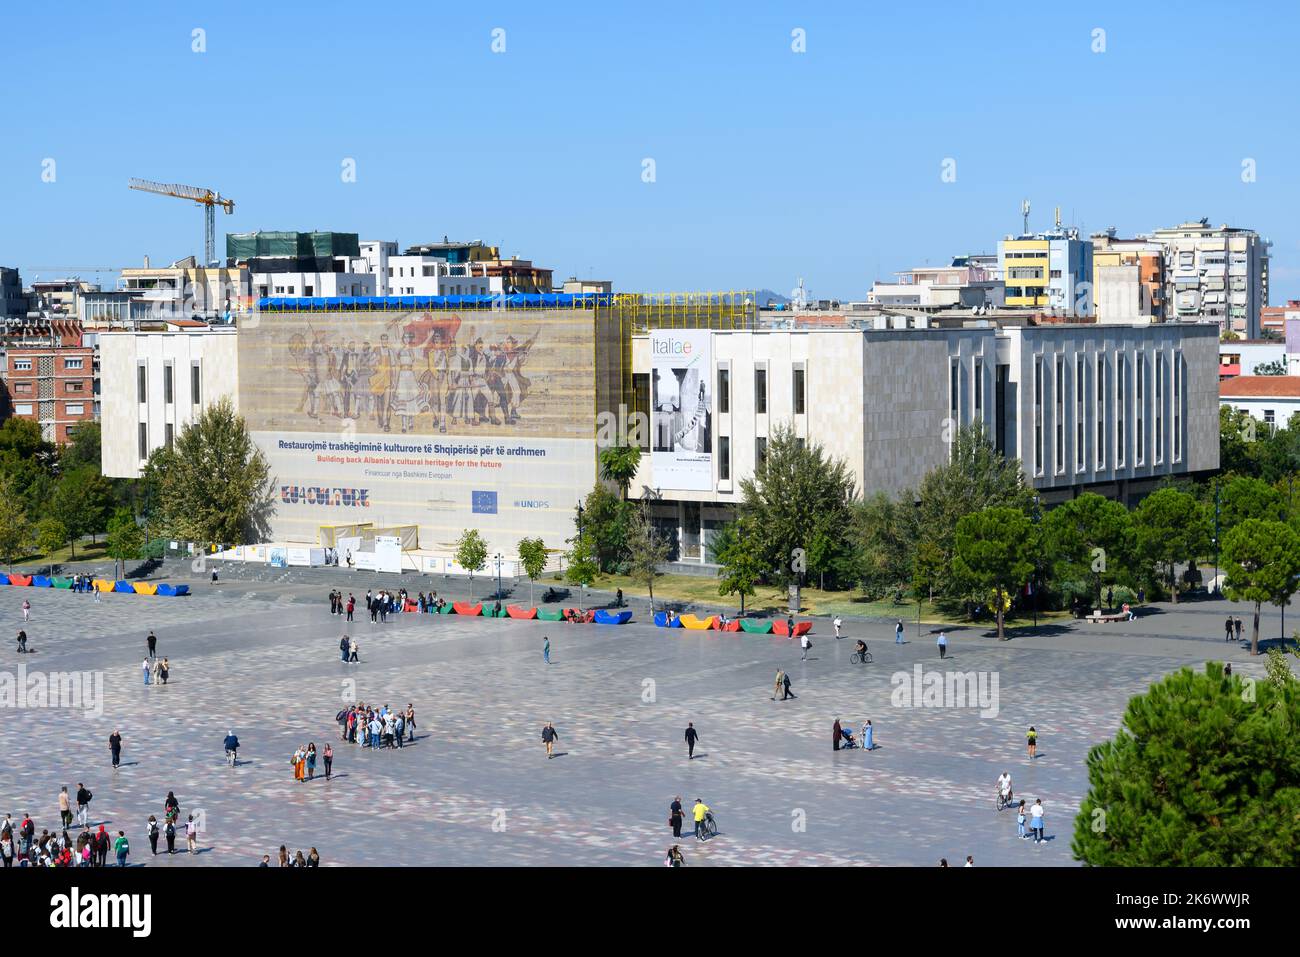 Albaniens nationales Geschichtsmuseum auf dem Skanderbeg-Platz in Tirana, Albanien. Scafoldings für die Restaurierung des Mosaiks die Albaner. Stockfoto